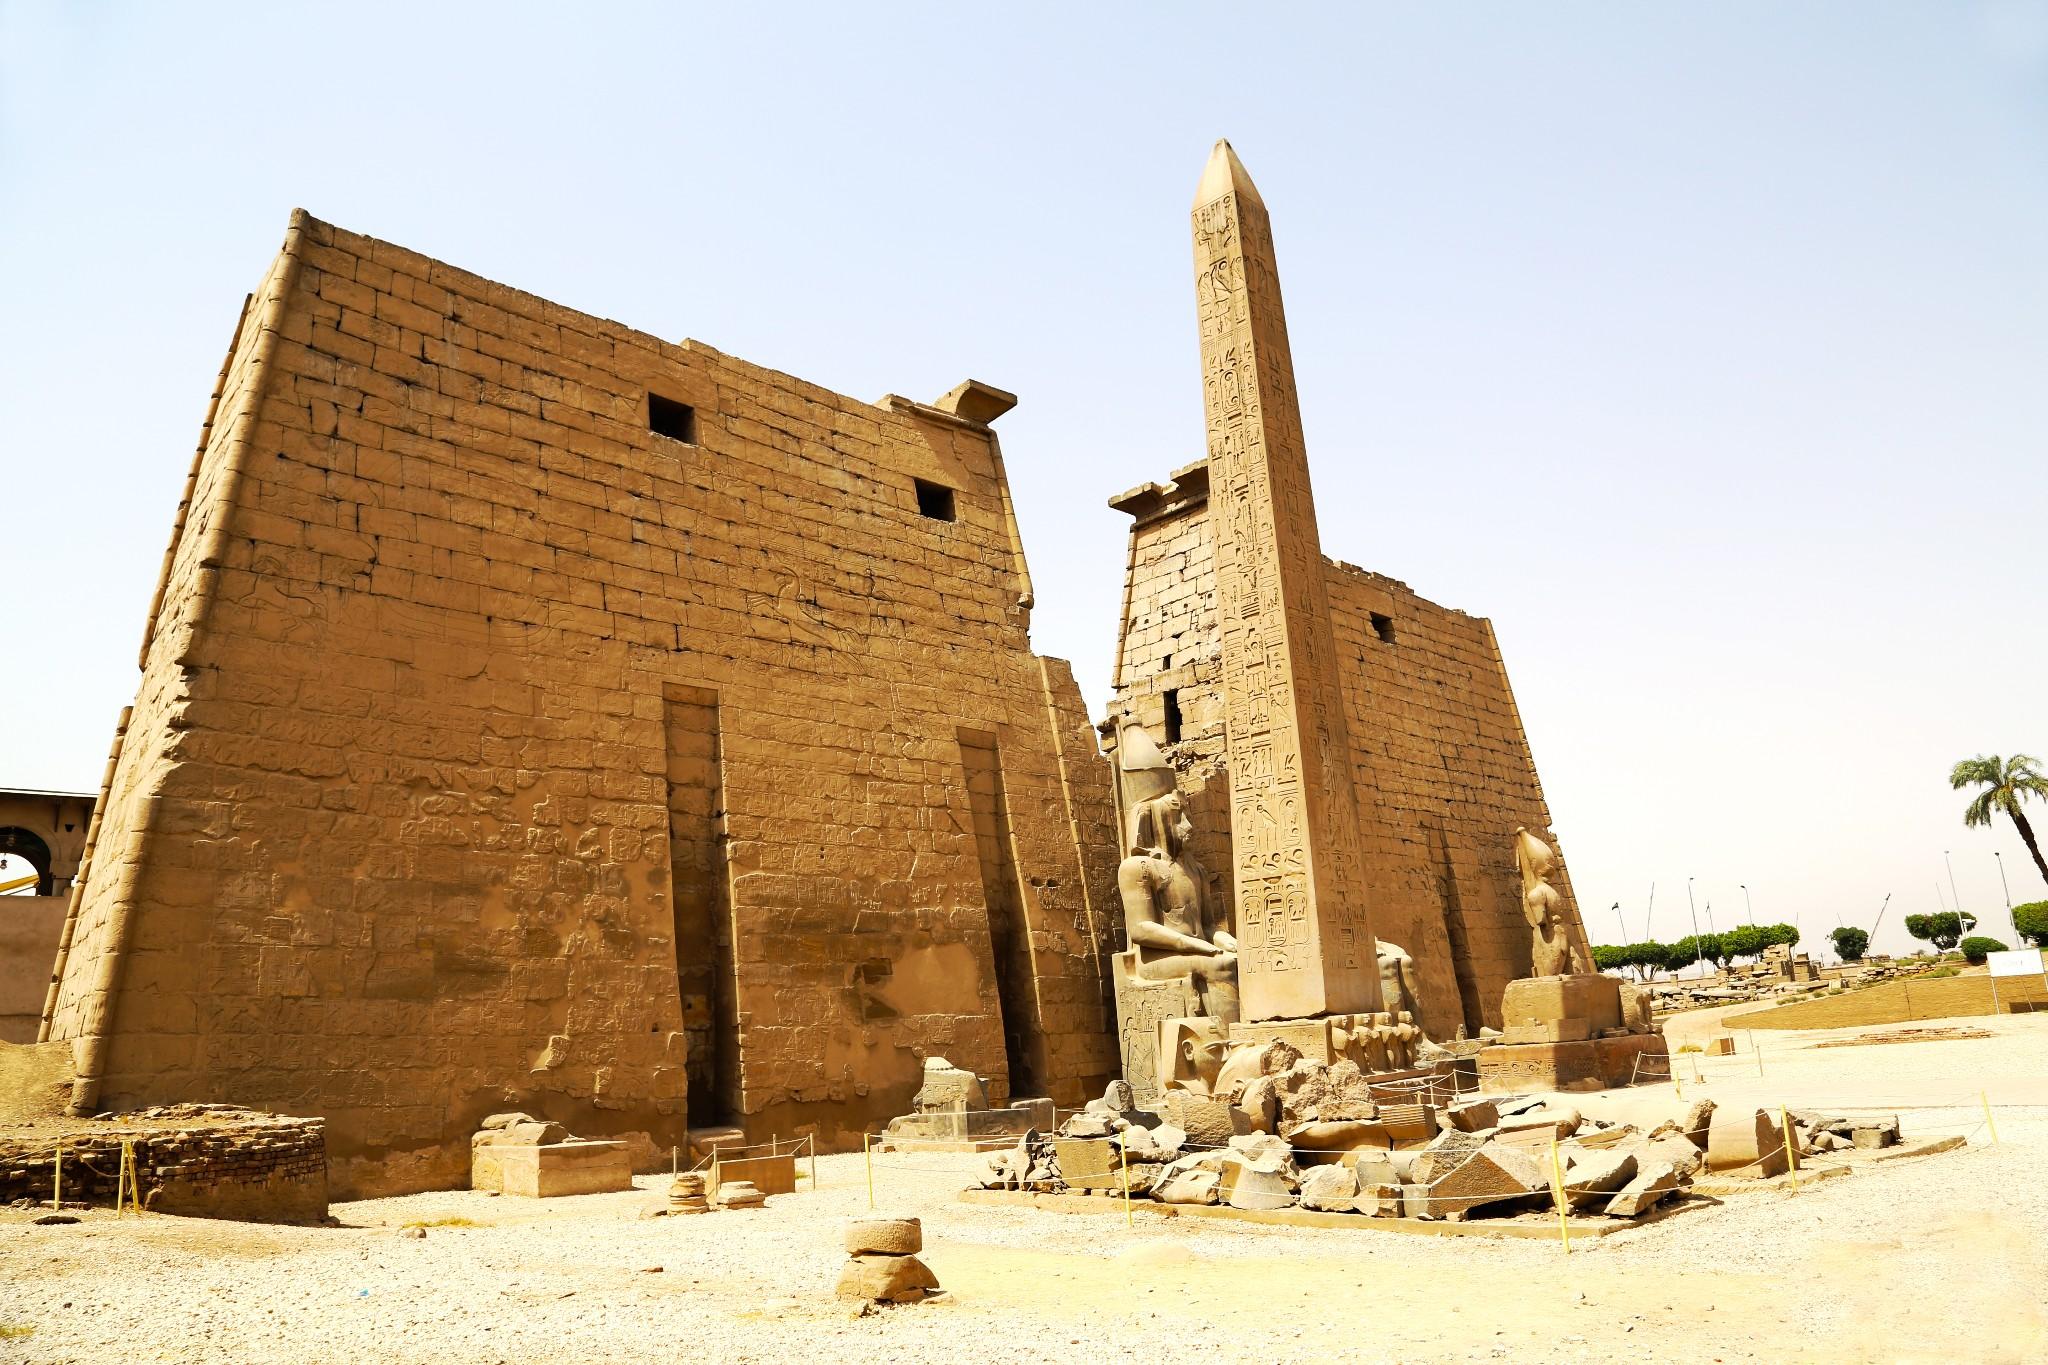 卡纳克寺古柱、方尖碑和柱 埃及 库存图片. 图片 包括有 上帝, 地标, 巡航, 闹事, 期间, 外部 - 184962511